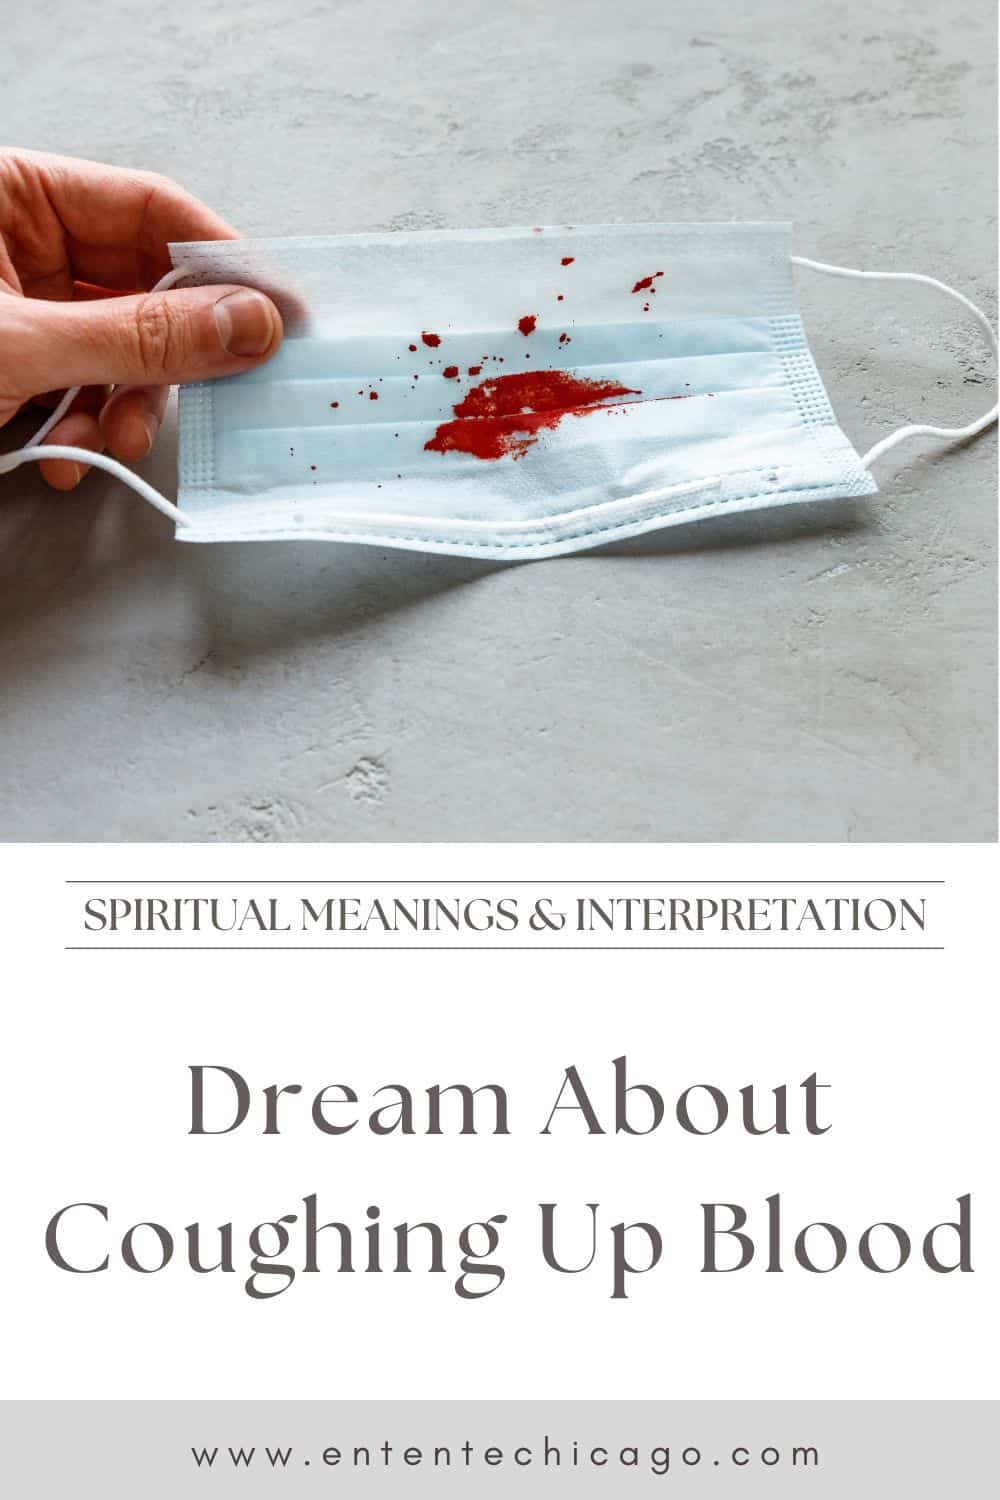  खून खांसी के बारे में सपना (सौभाग्यपूर्ण व्याख्या)